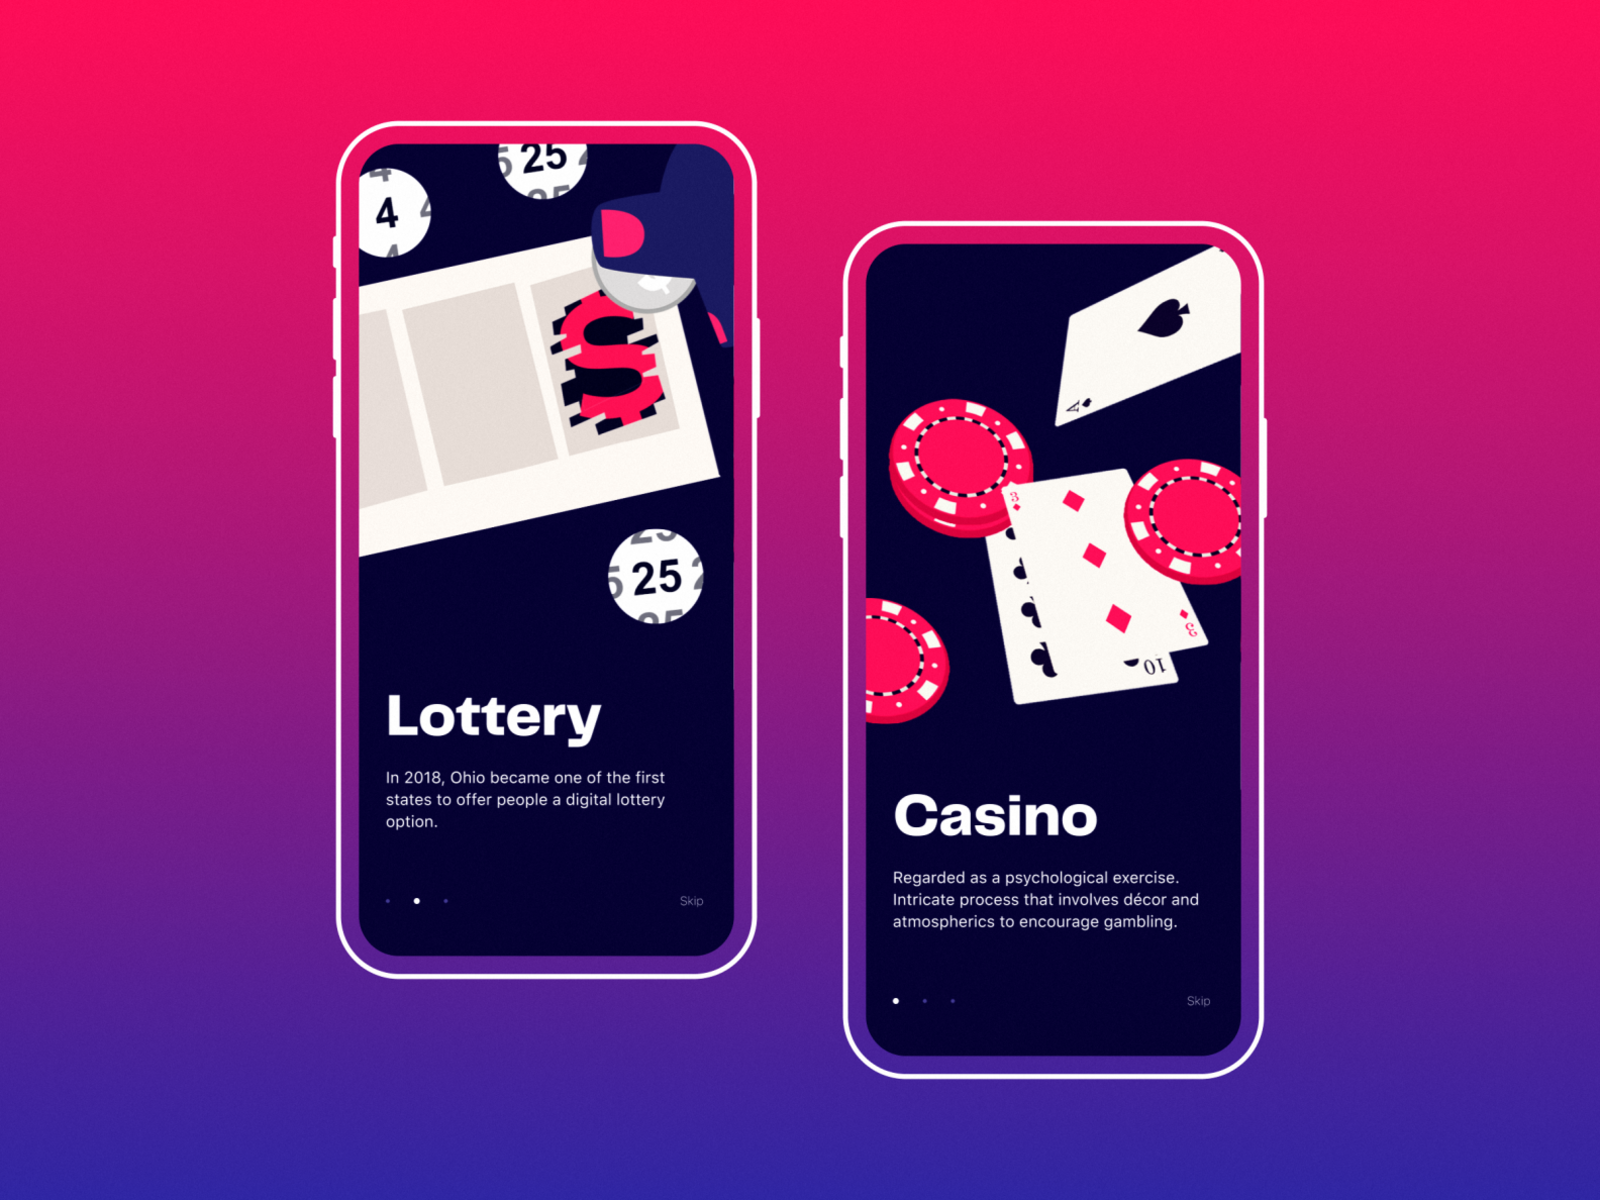 Mobile casino game. Мобильное казино. Мобильное приложение казино. Casino mobile. Гемблинг приложения.